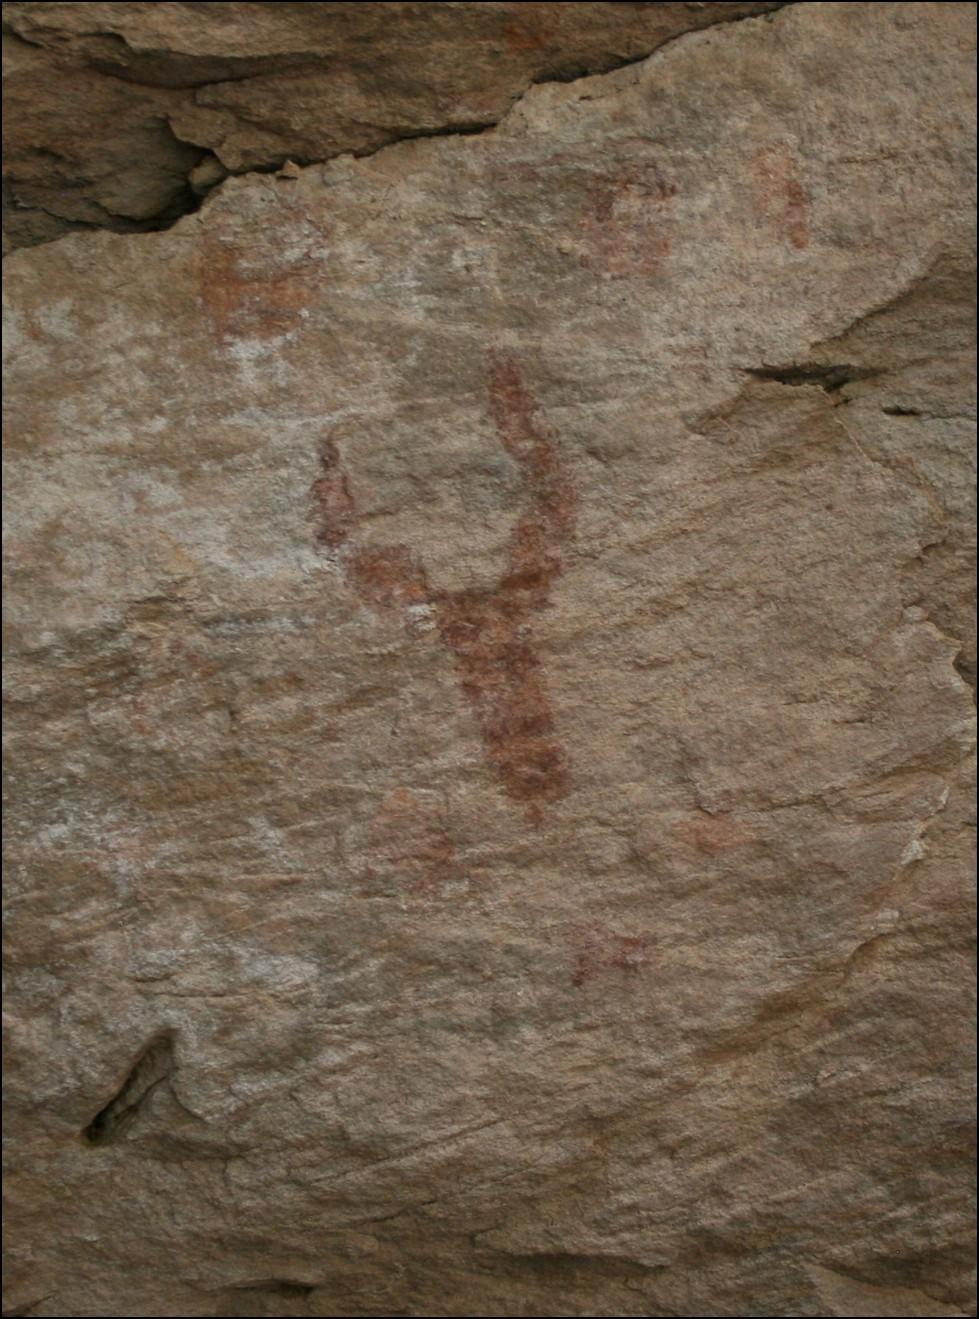 Petroglyphs continued.